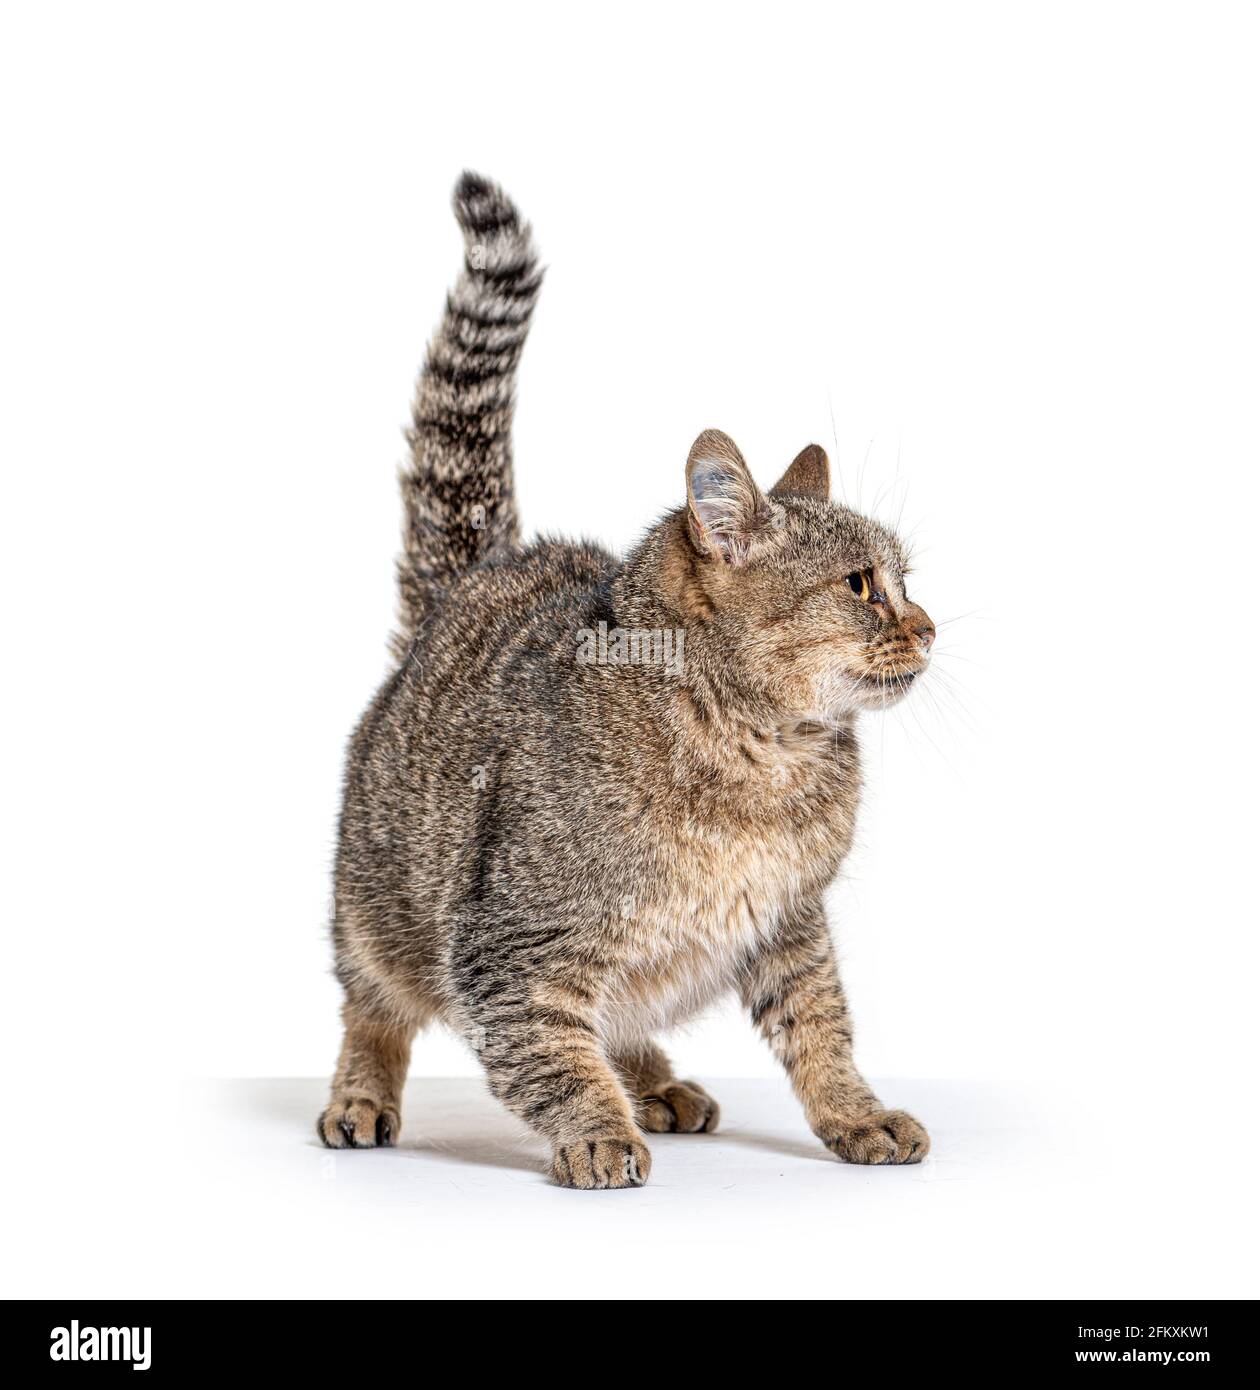 Viejo gato de raza cruzada mirando hacia fuera Foto de stock